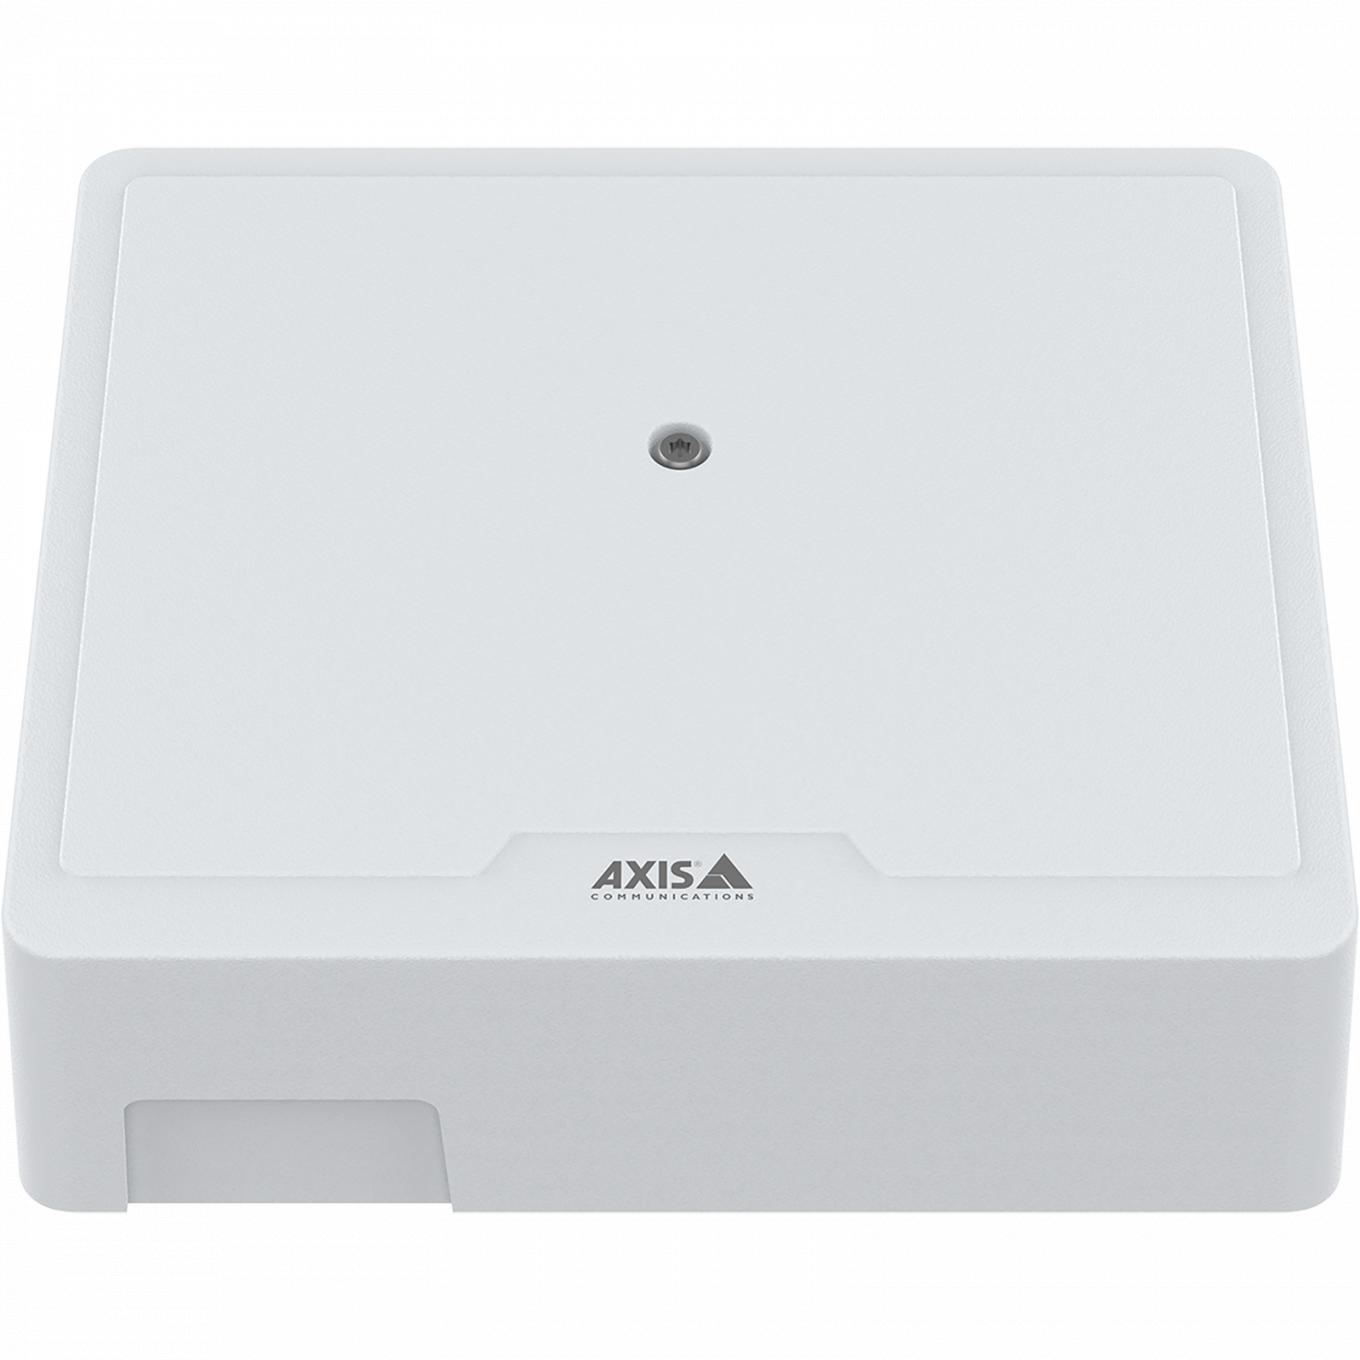 AXIS A1210 Network Door Controller visto de frente